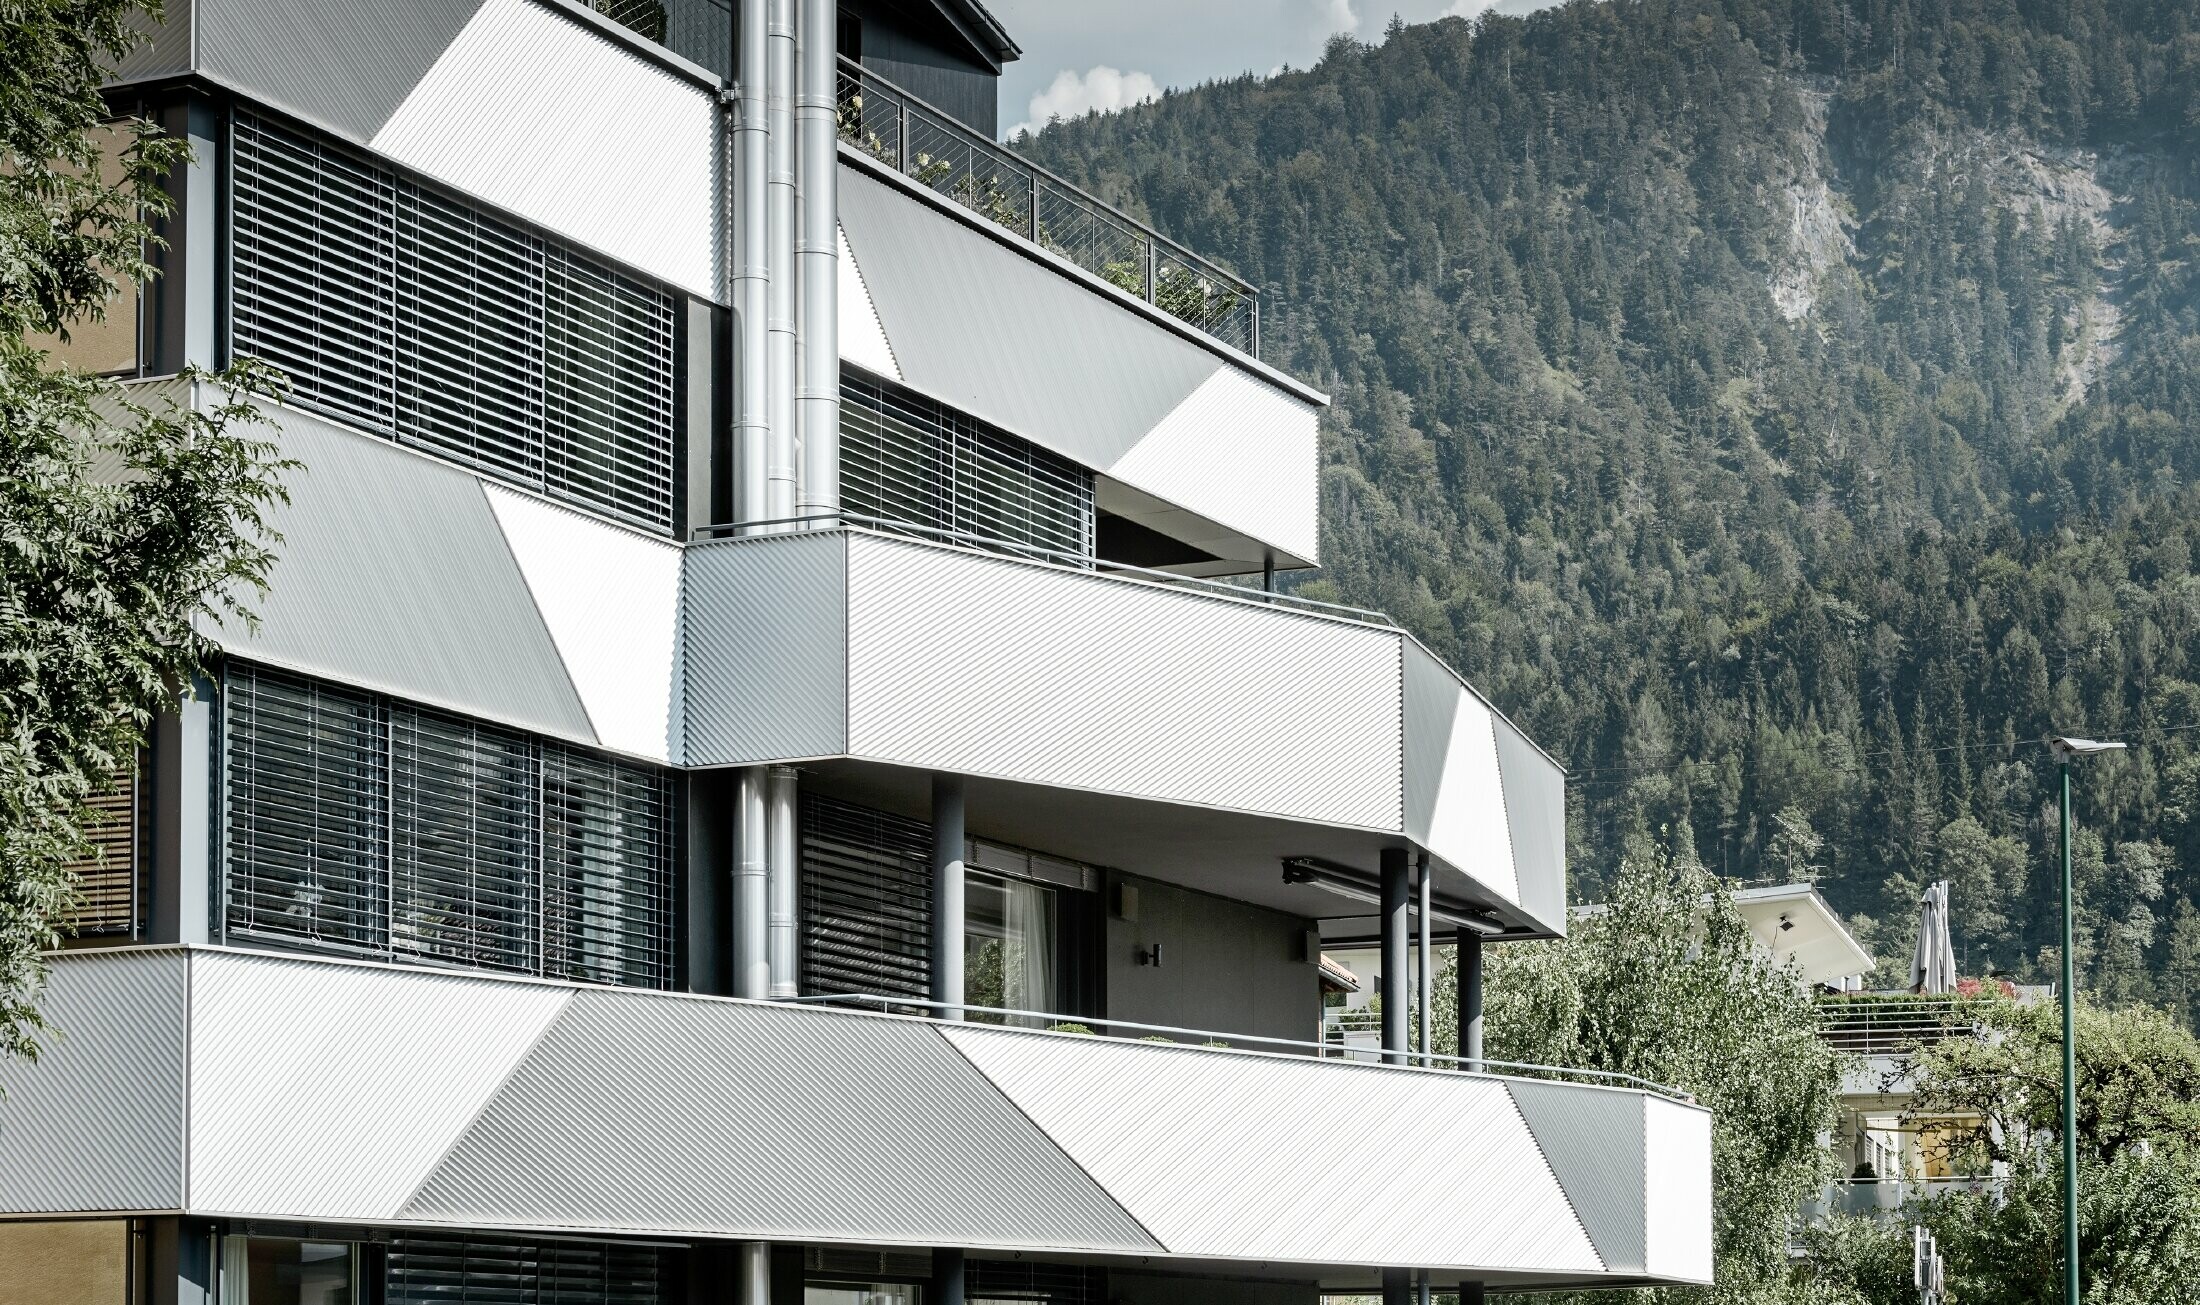 Fasaddesign för ett flerfamiljshus med balkonger och altaner med sicksackprofil från PREFA, diagonalt monterade.